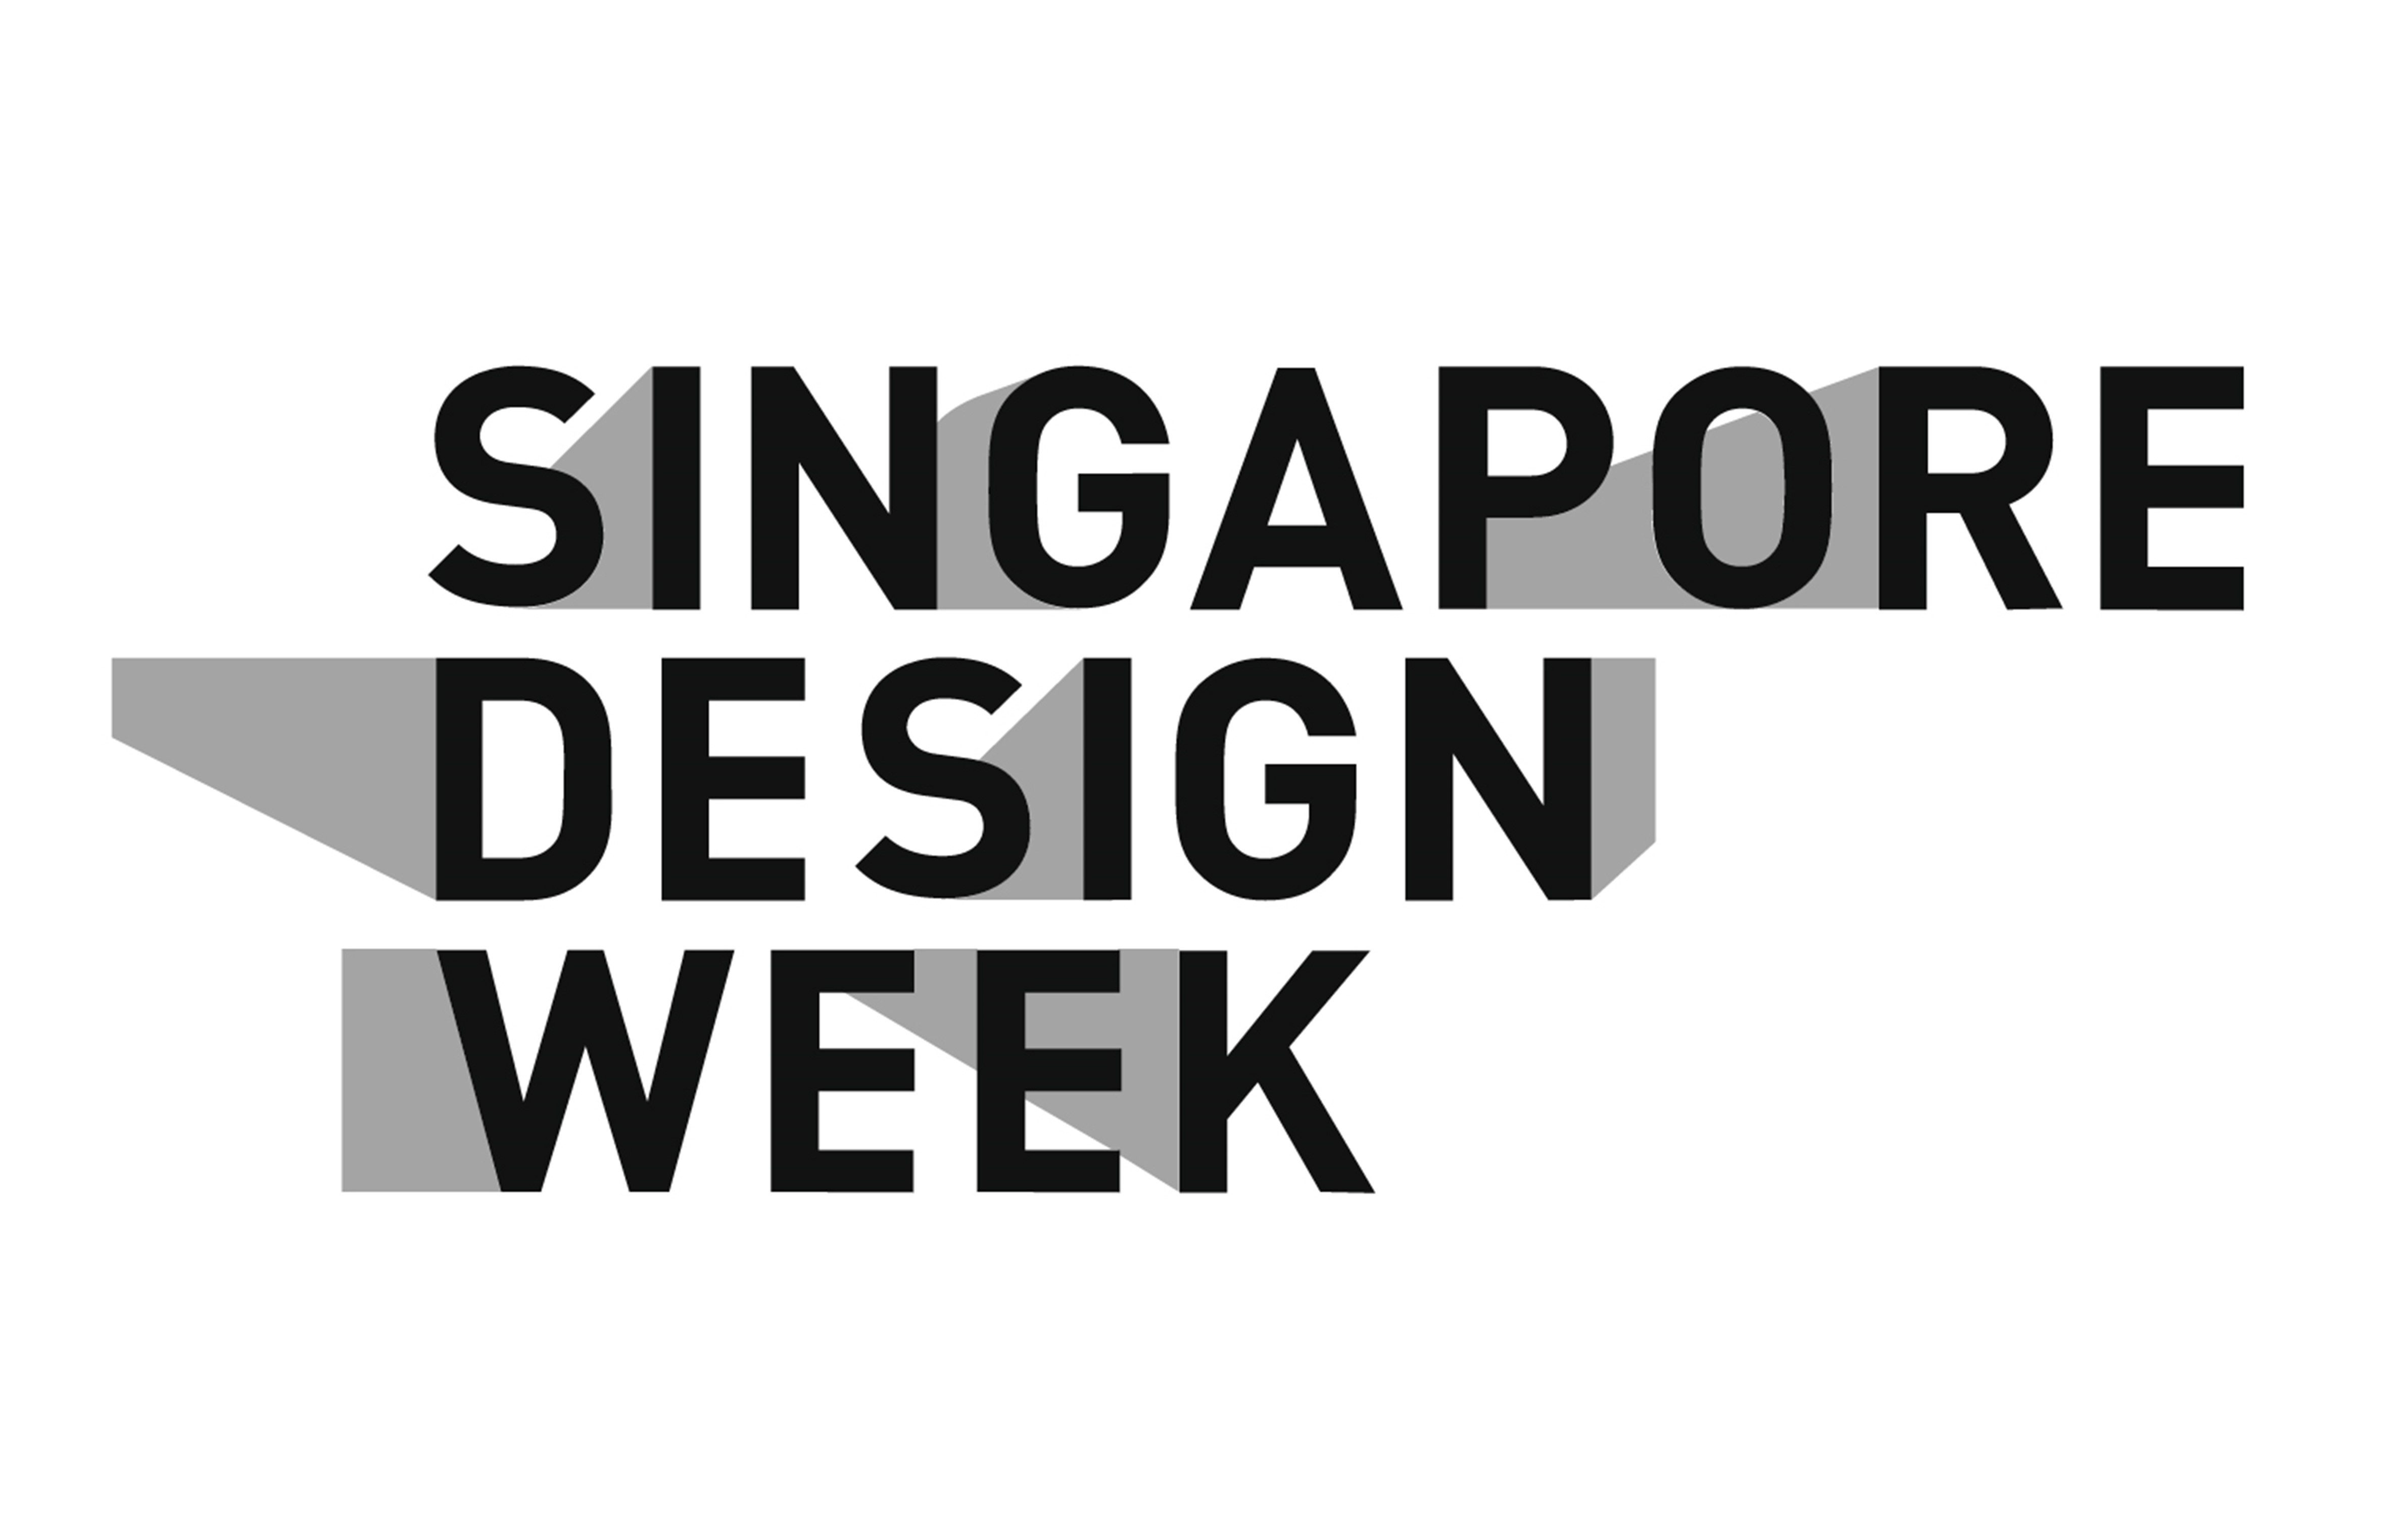 Singapore Design Week